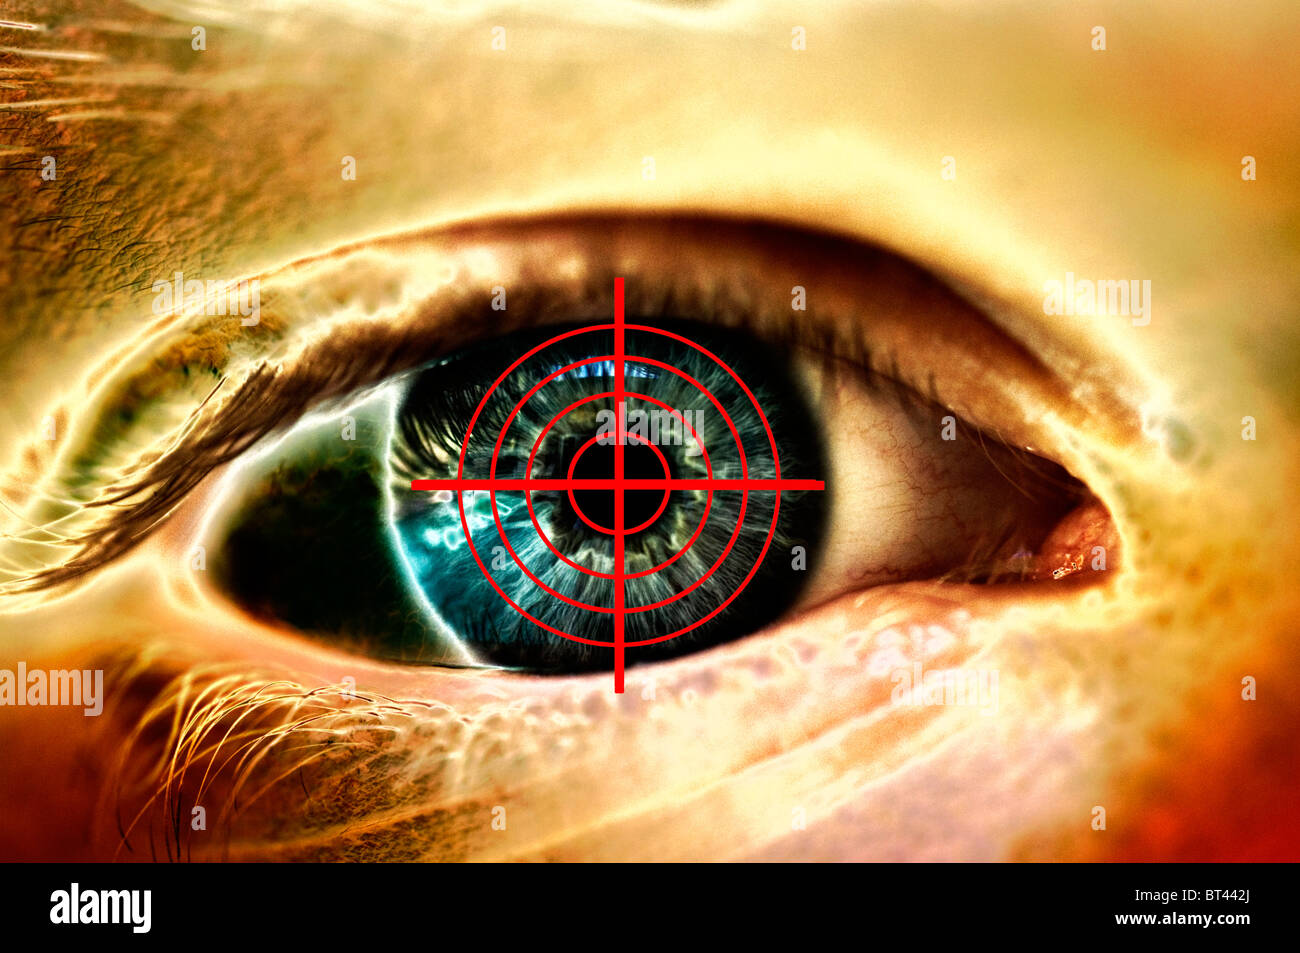 Vue rapprochée de l'œil humain avec la vue des armes à feu les réticules Banque D'Images